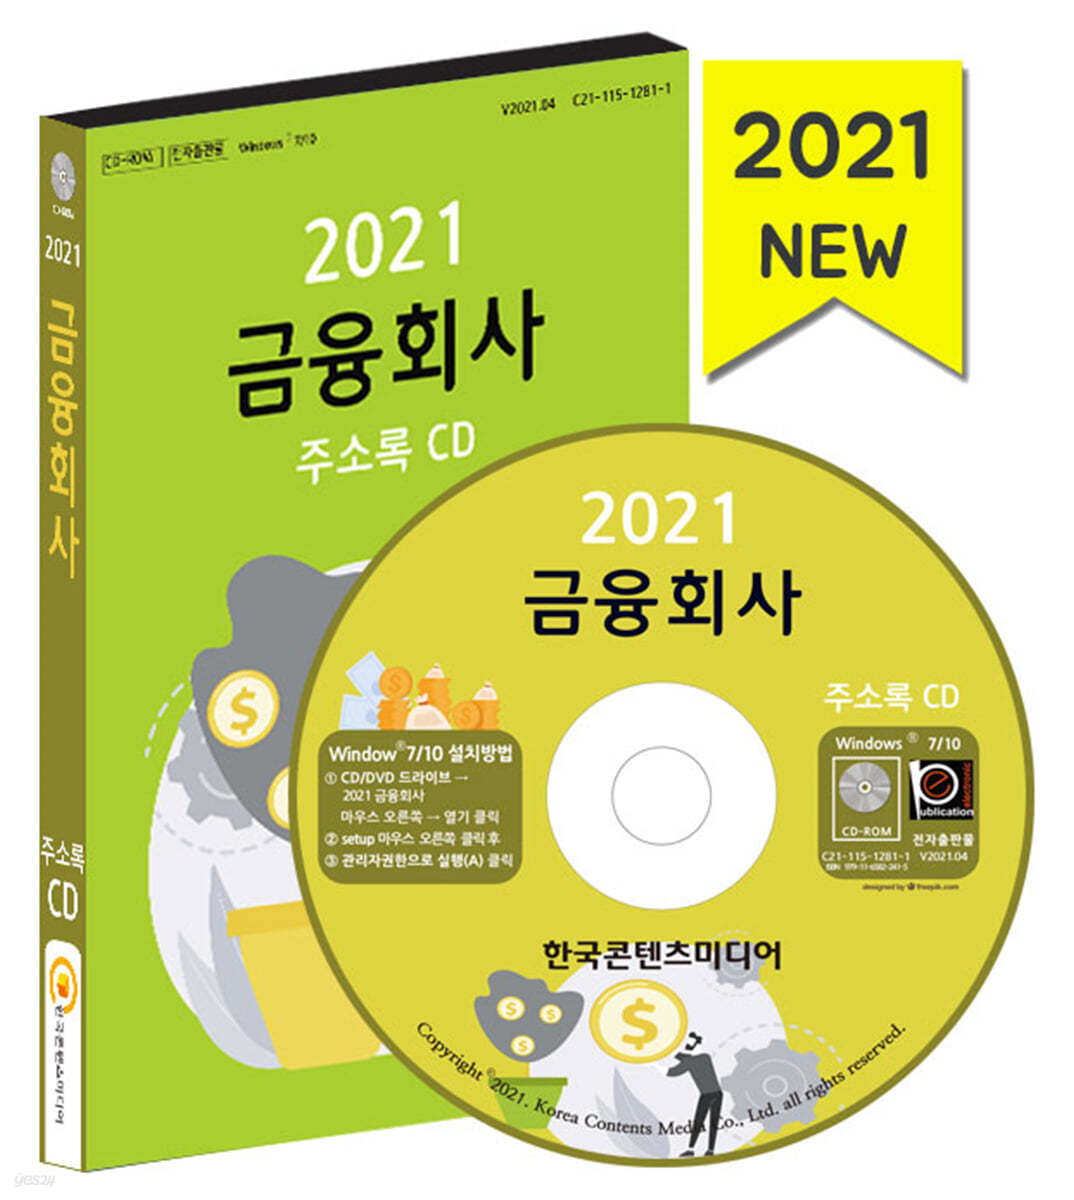 2021 금융회사 주소록 CD